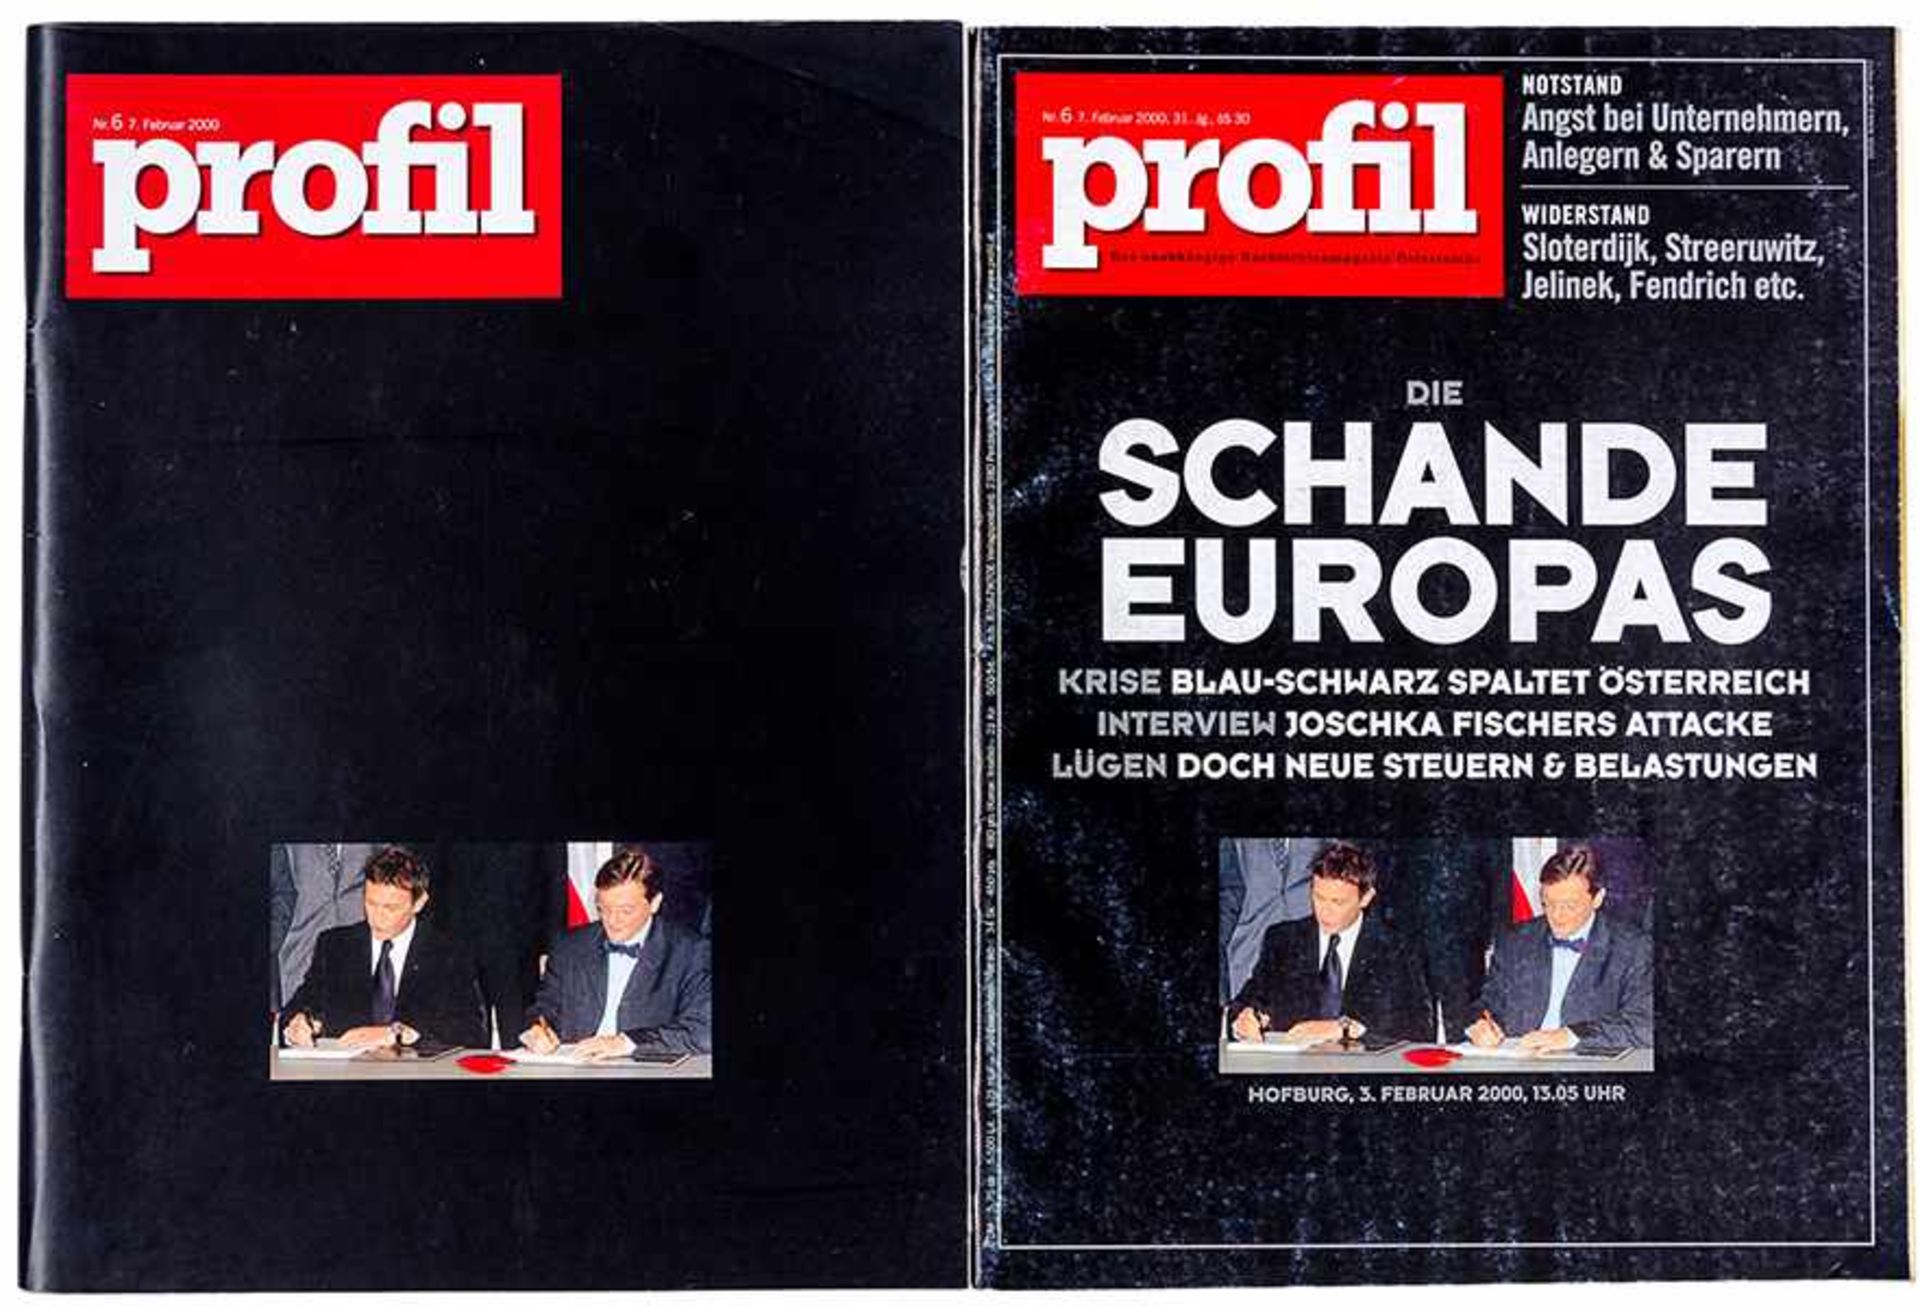 Feldmann, Hans-Peter. Profil ohne Worte. Und: Profil" Nr. 6, 7. Februar 2000. 2 Hefte. Mit